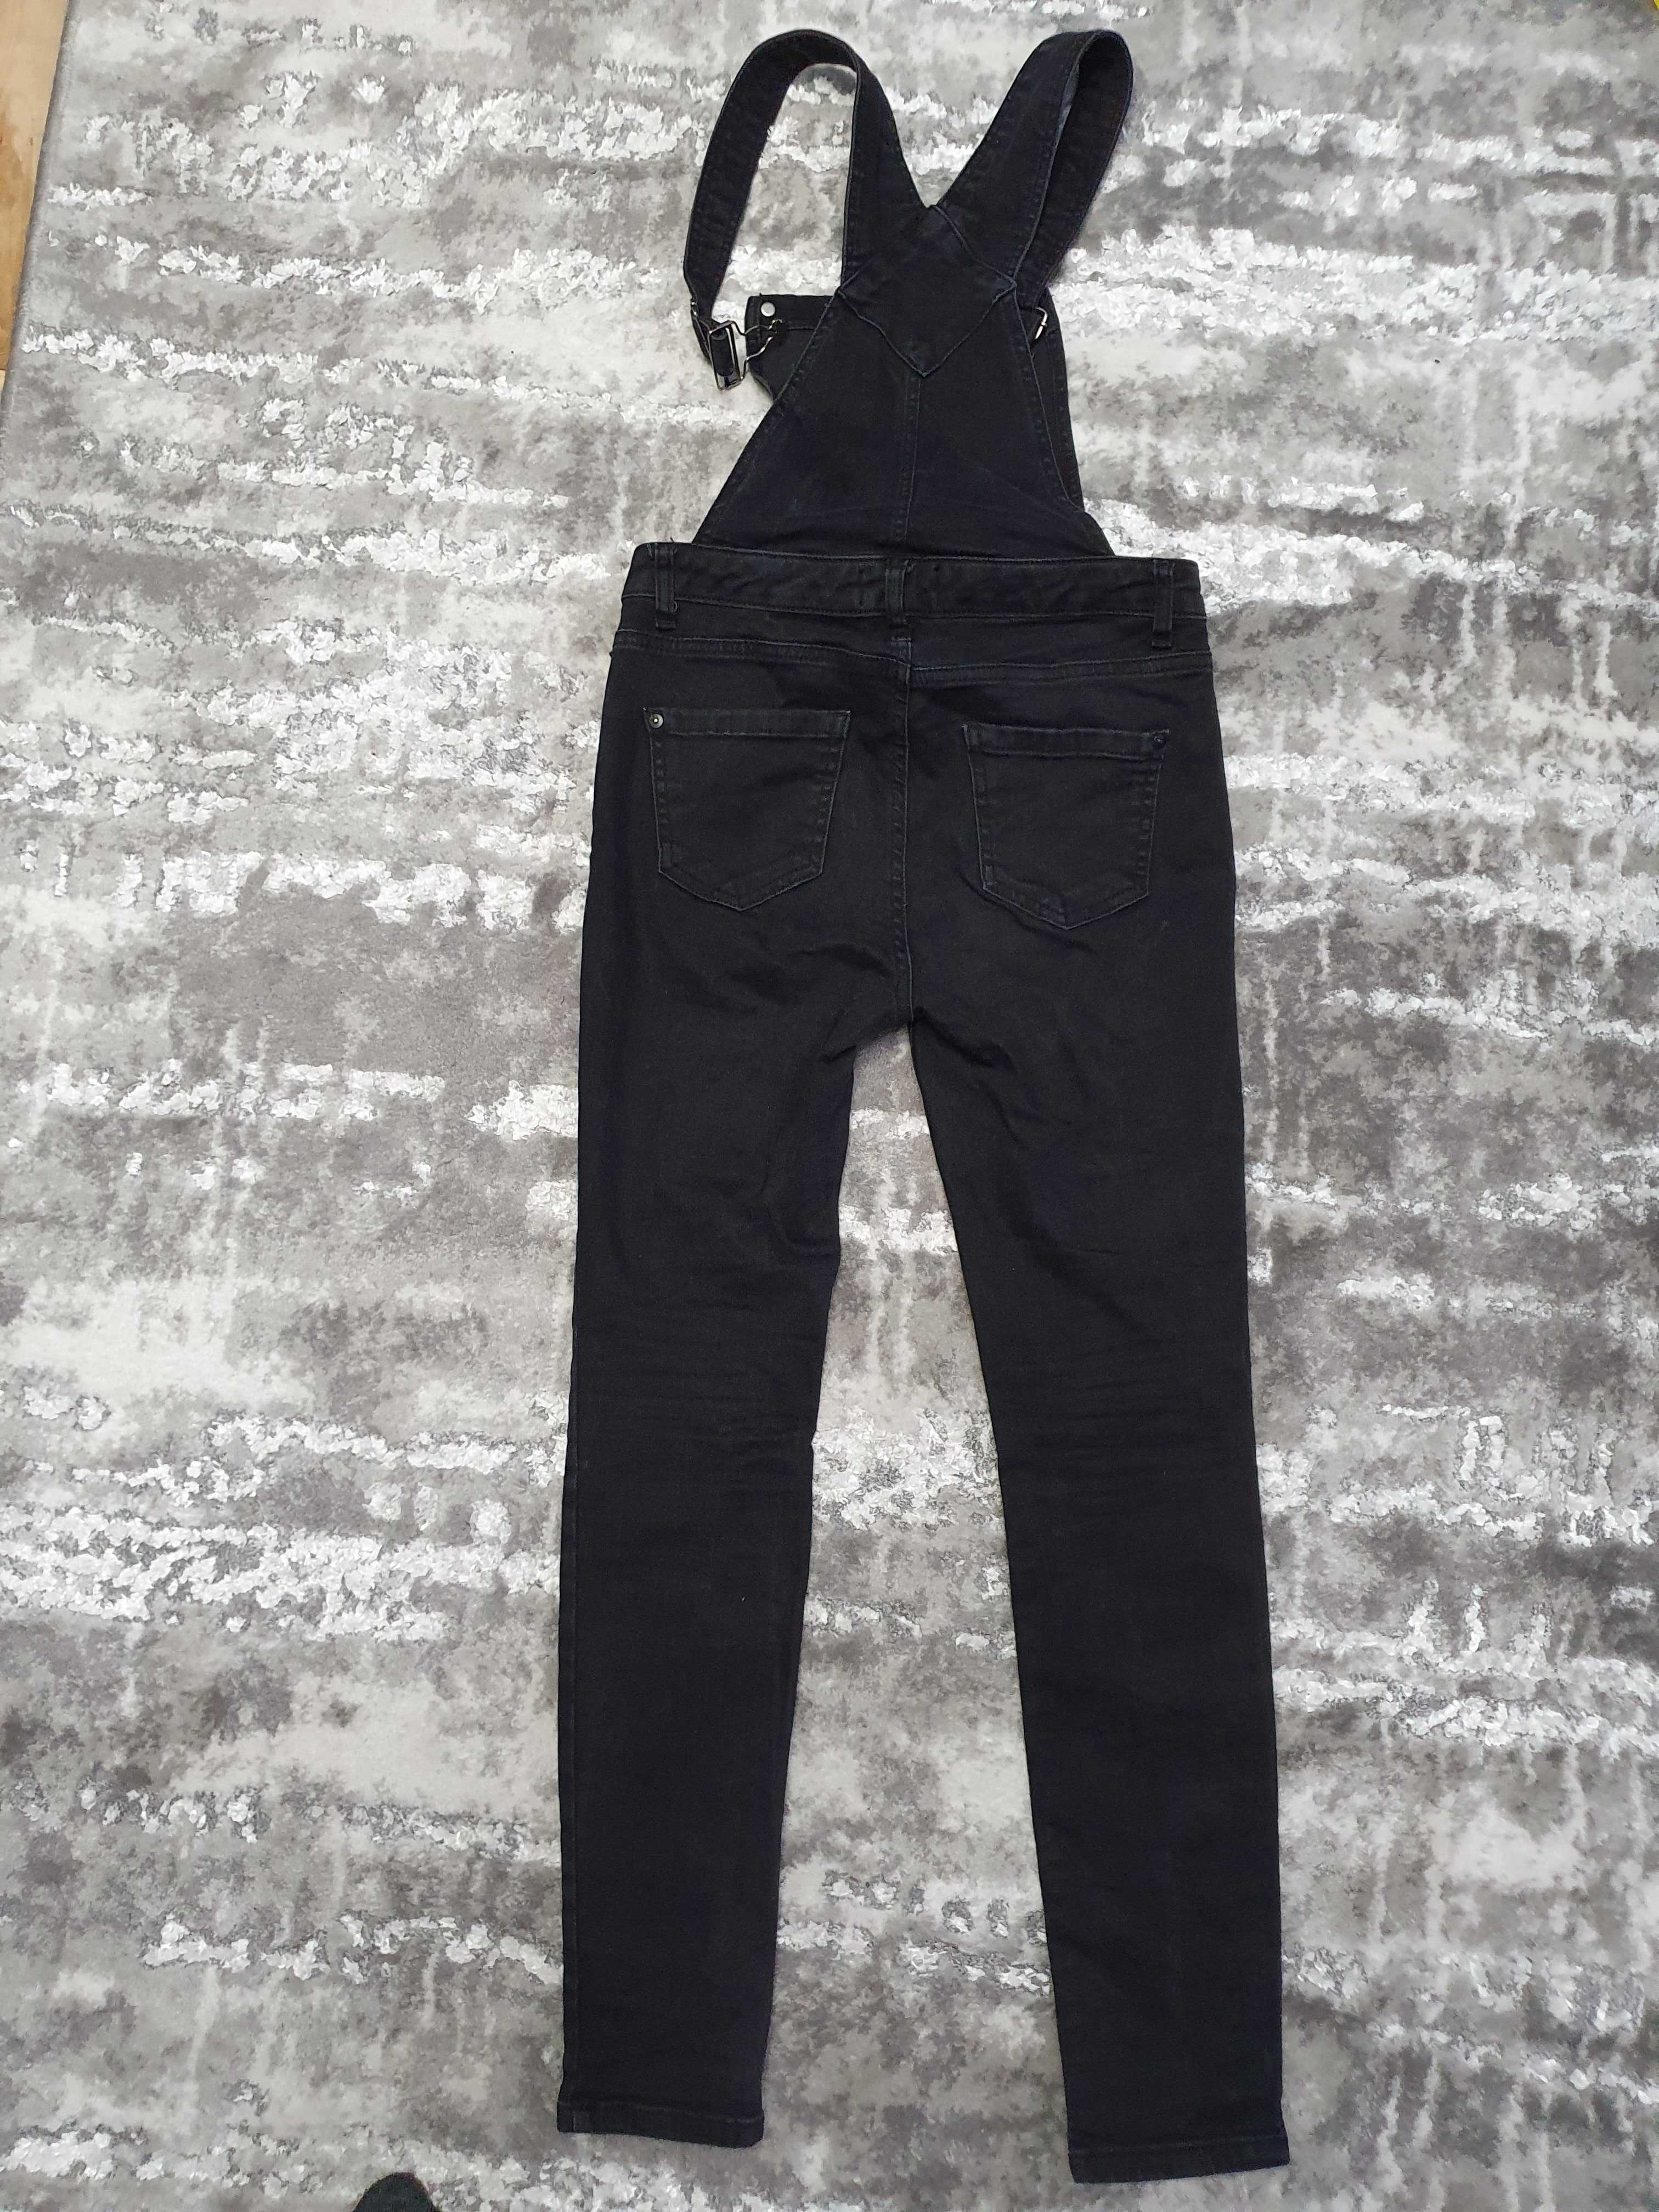 Комбинезон джинсовый черный брюки в клетку штаны клетчатые